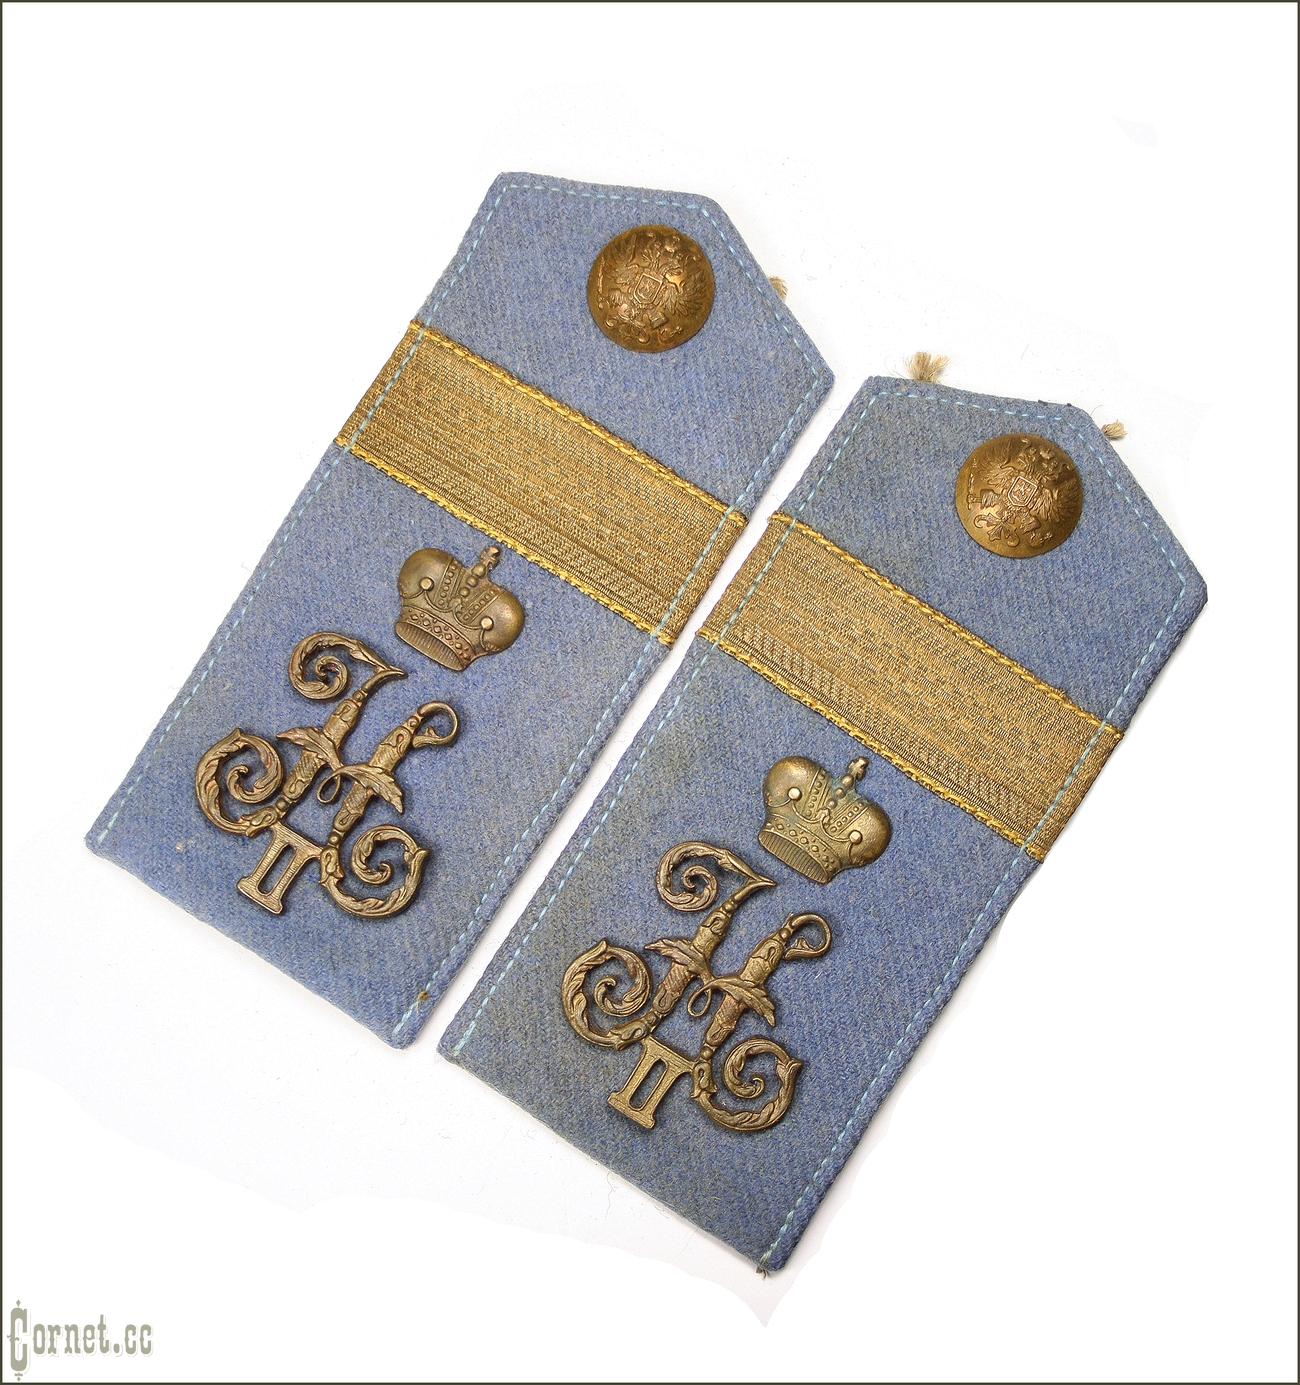 Shoulder straps of the 84th infantry regiment